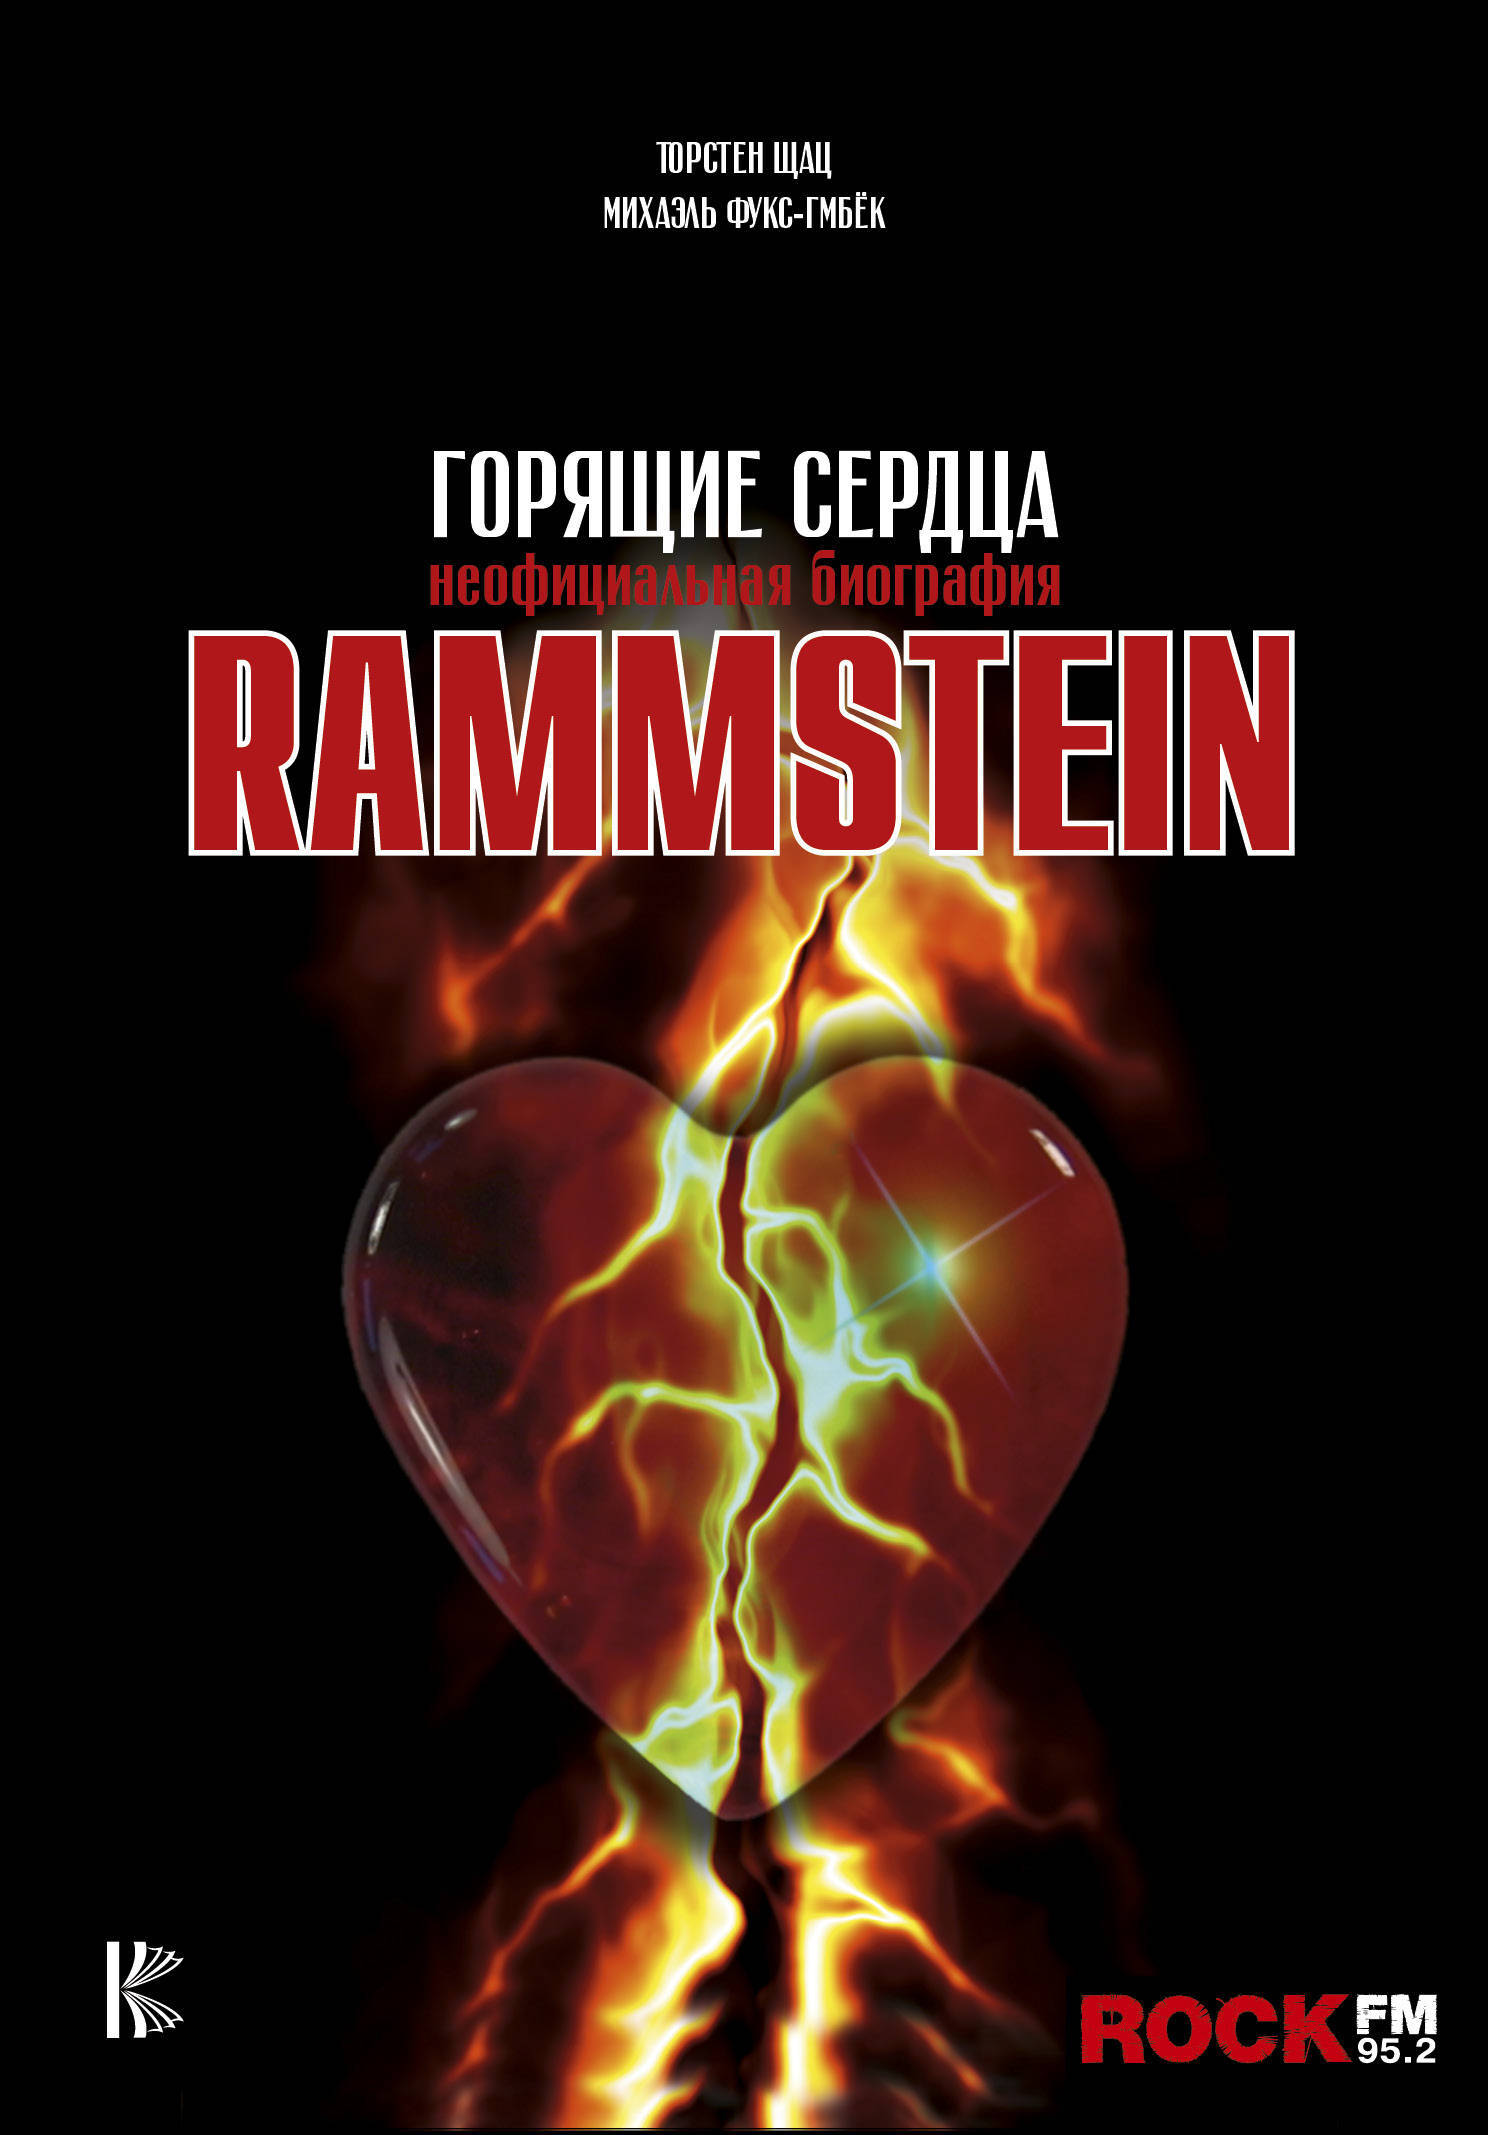 Обложка книги Фукс-Гамбёк Михаэль, Шац Торстен: Rammstein. Горящие сердца